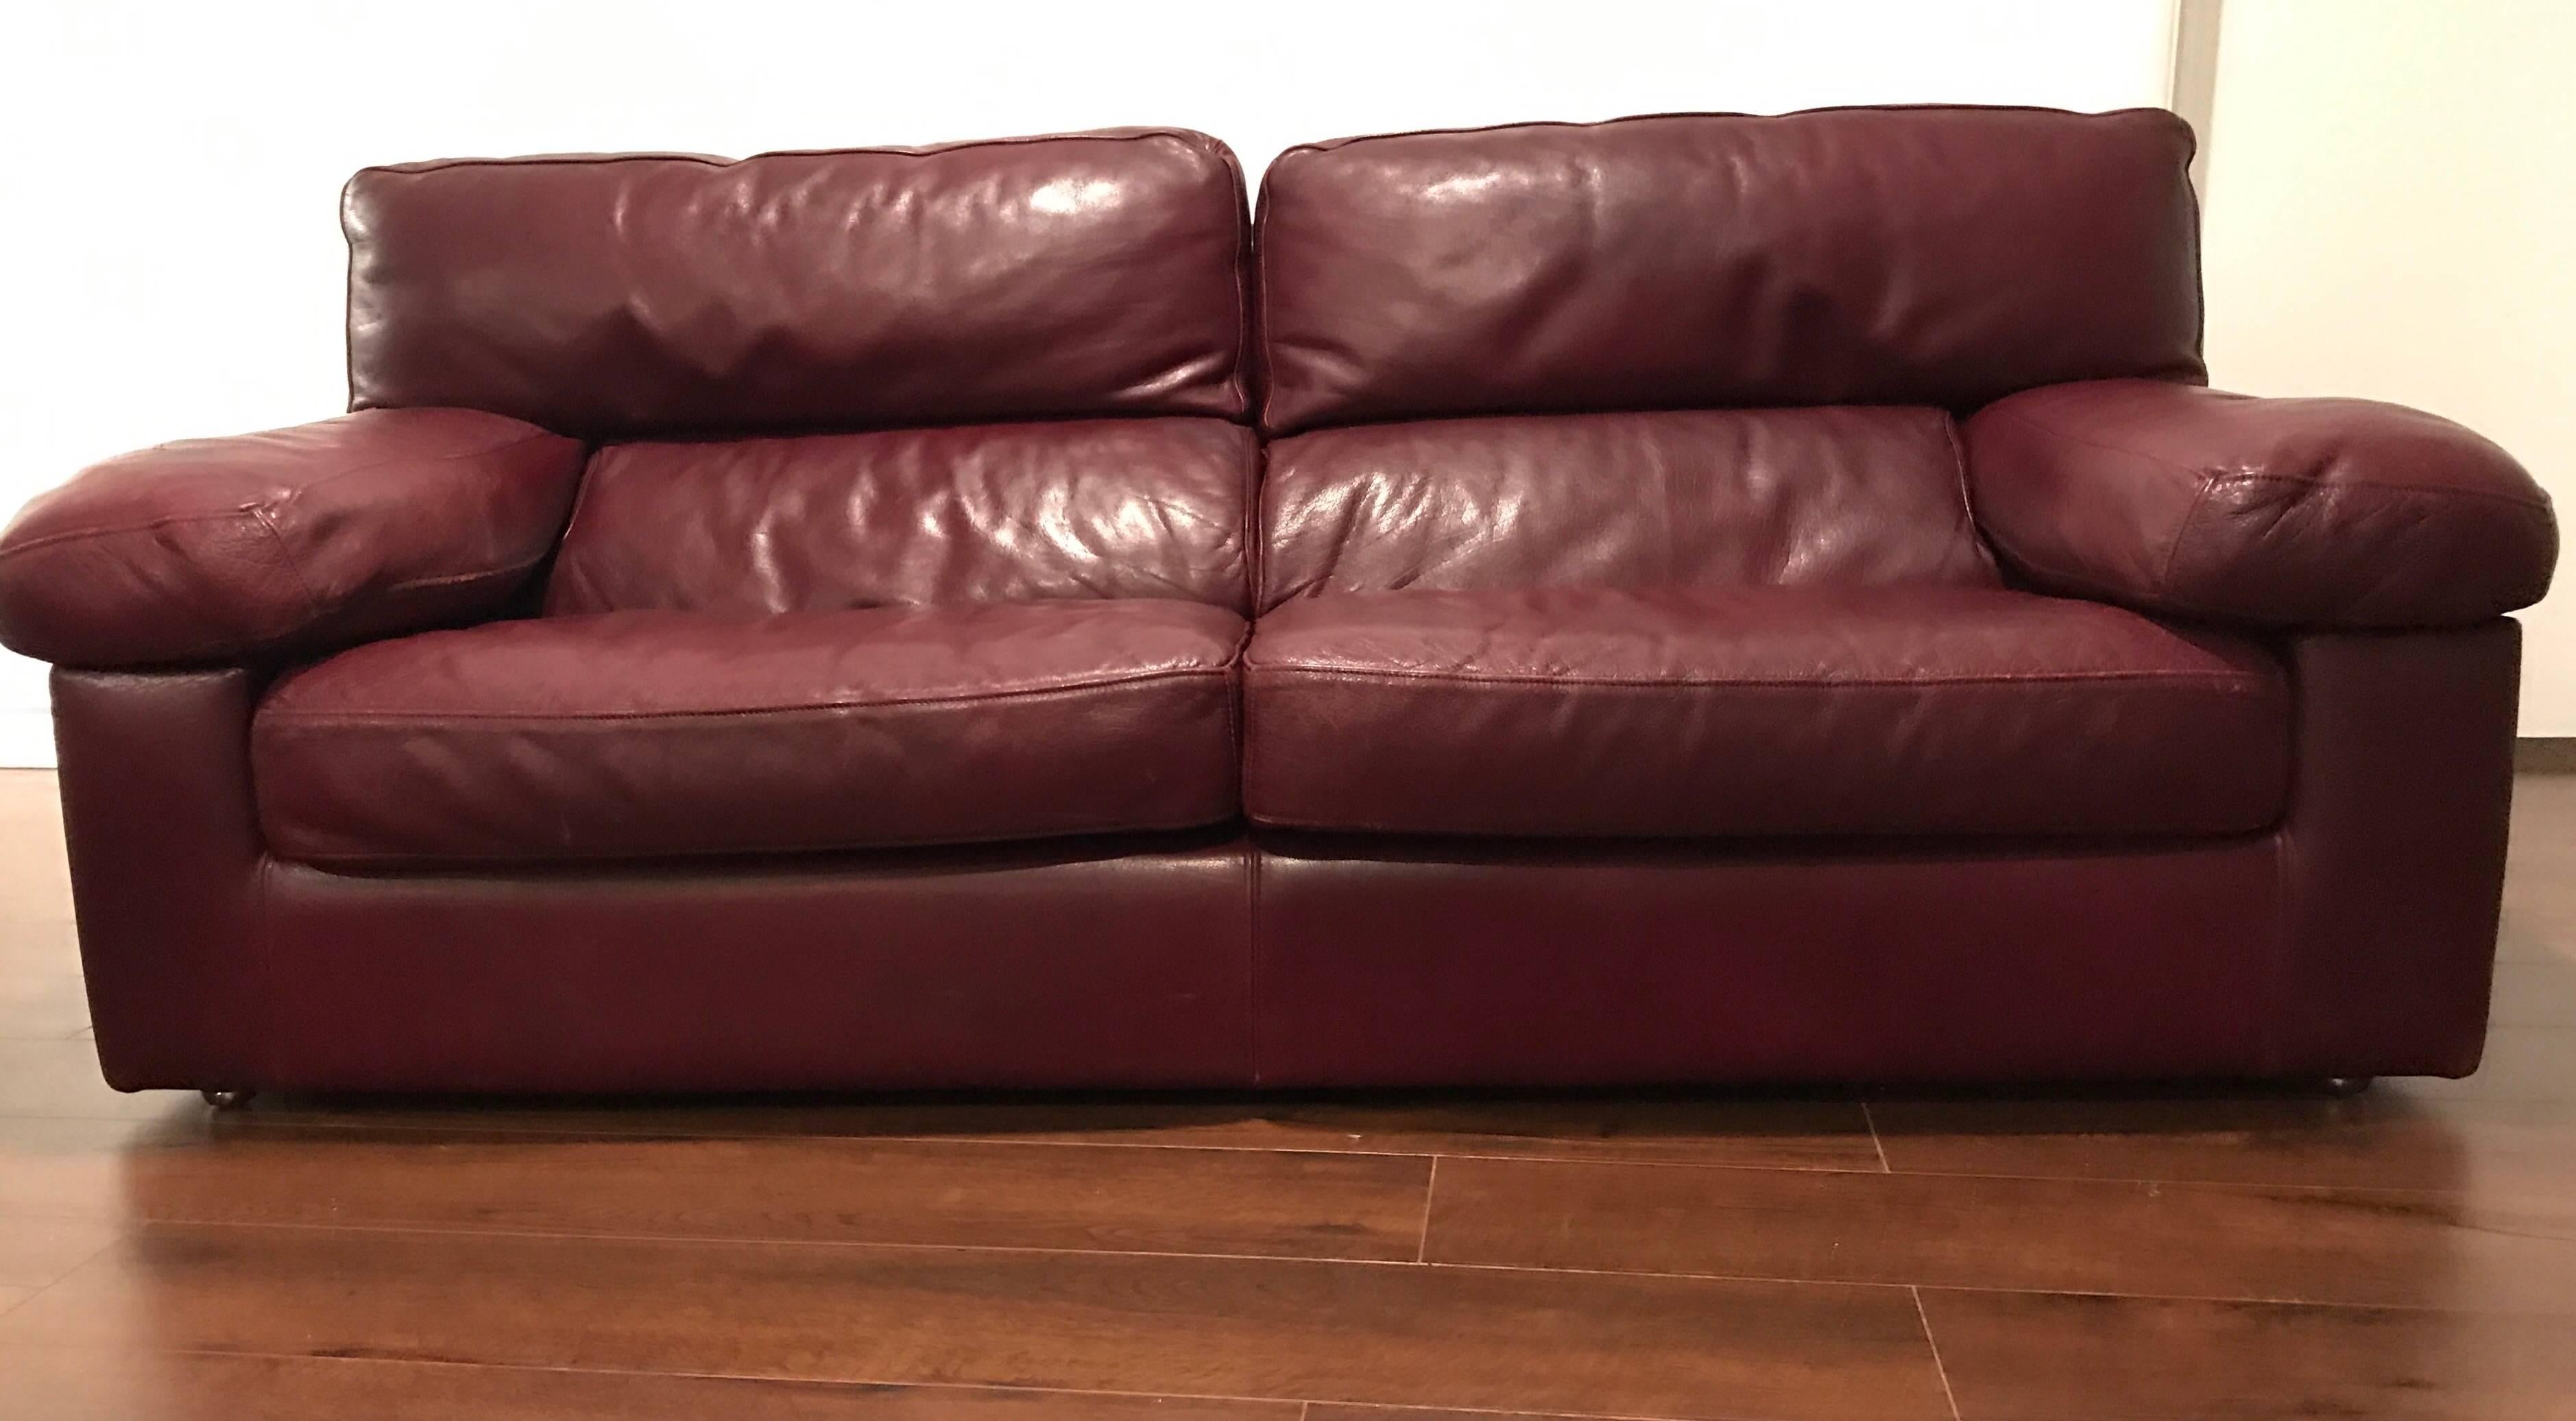 roche bobois leather sofa